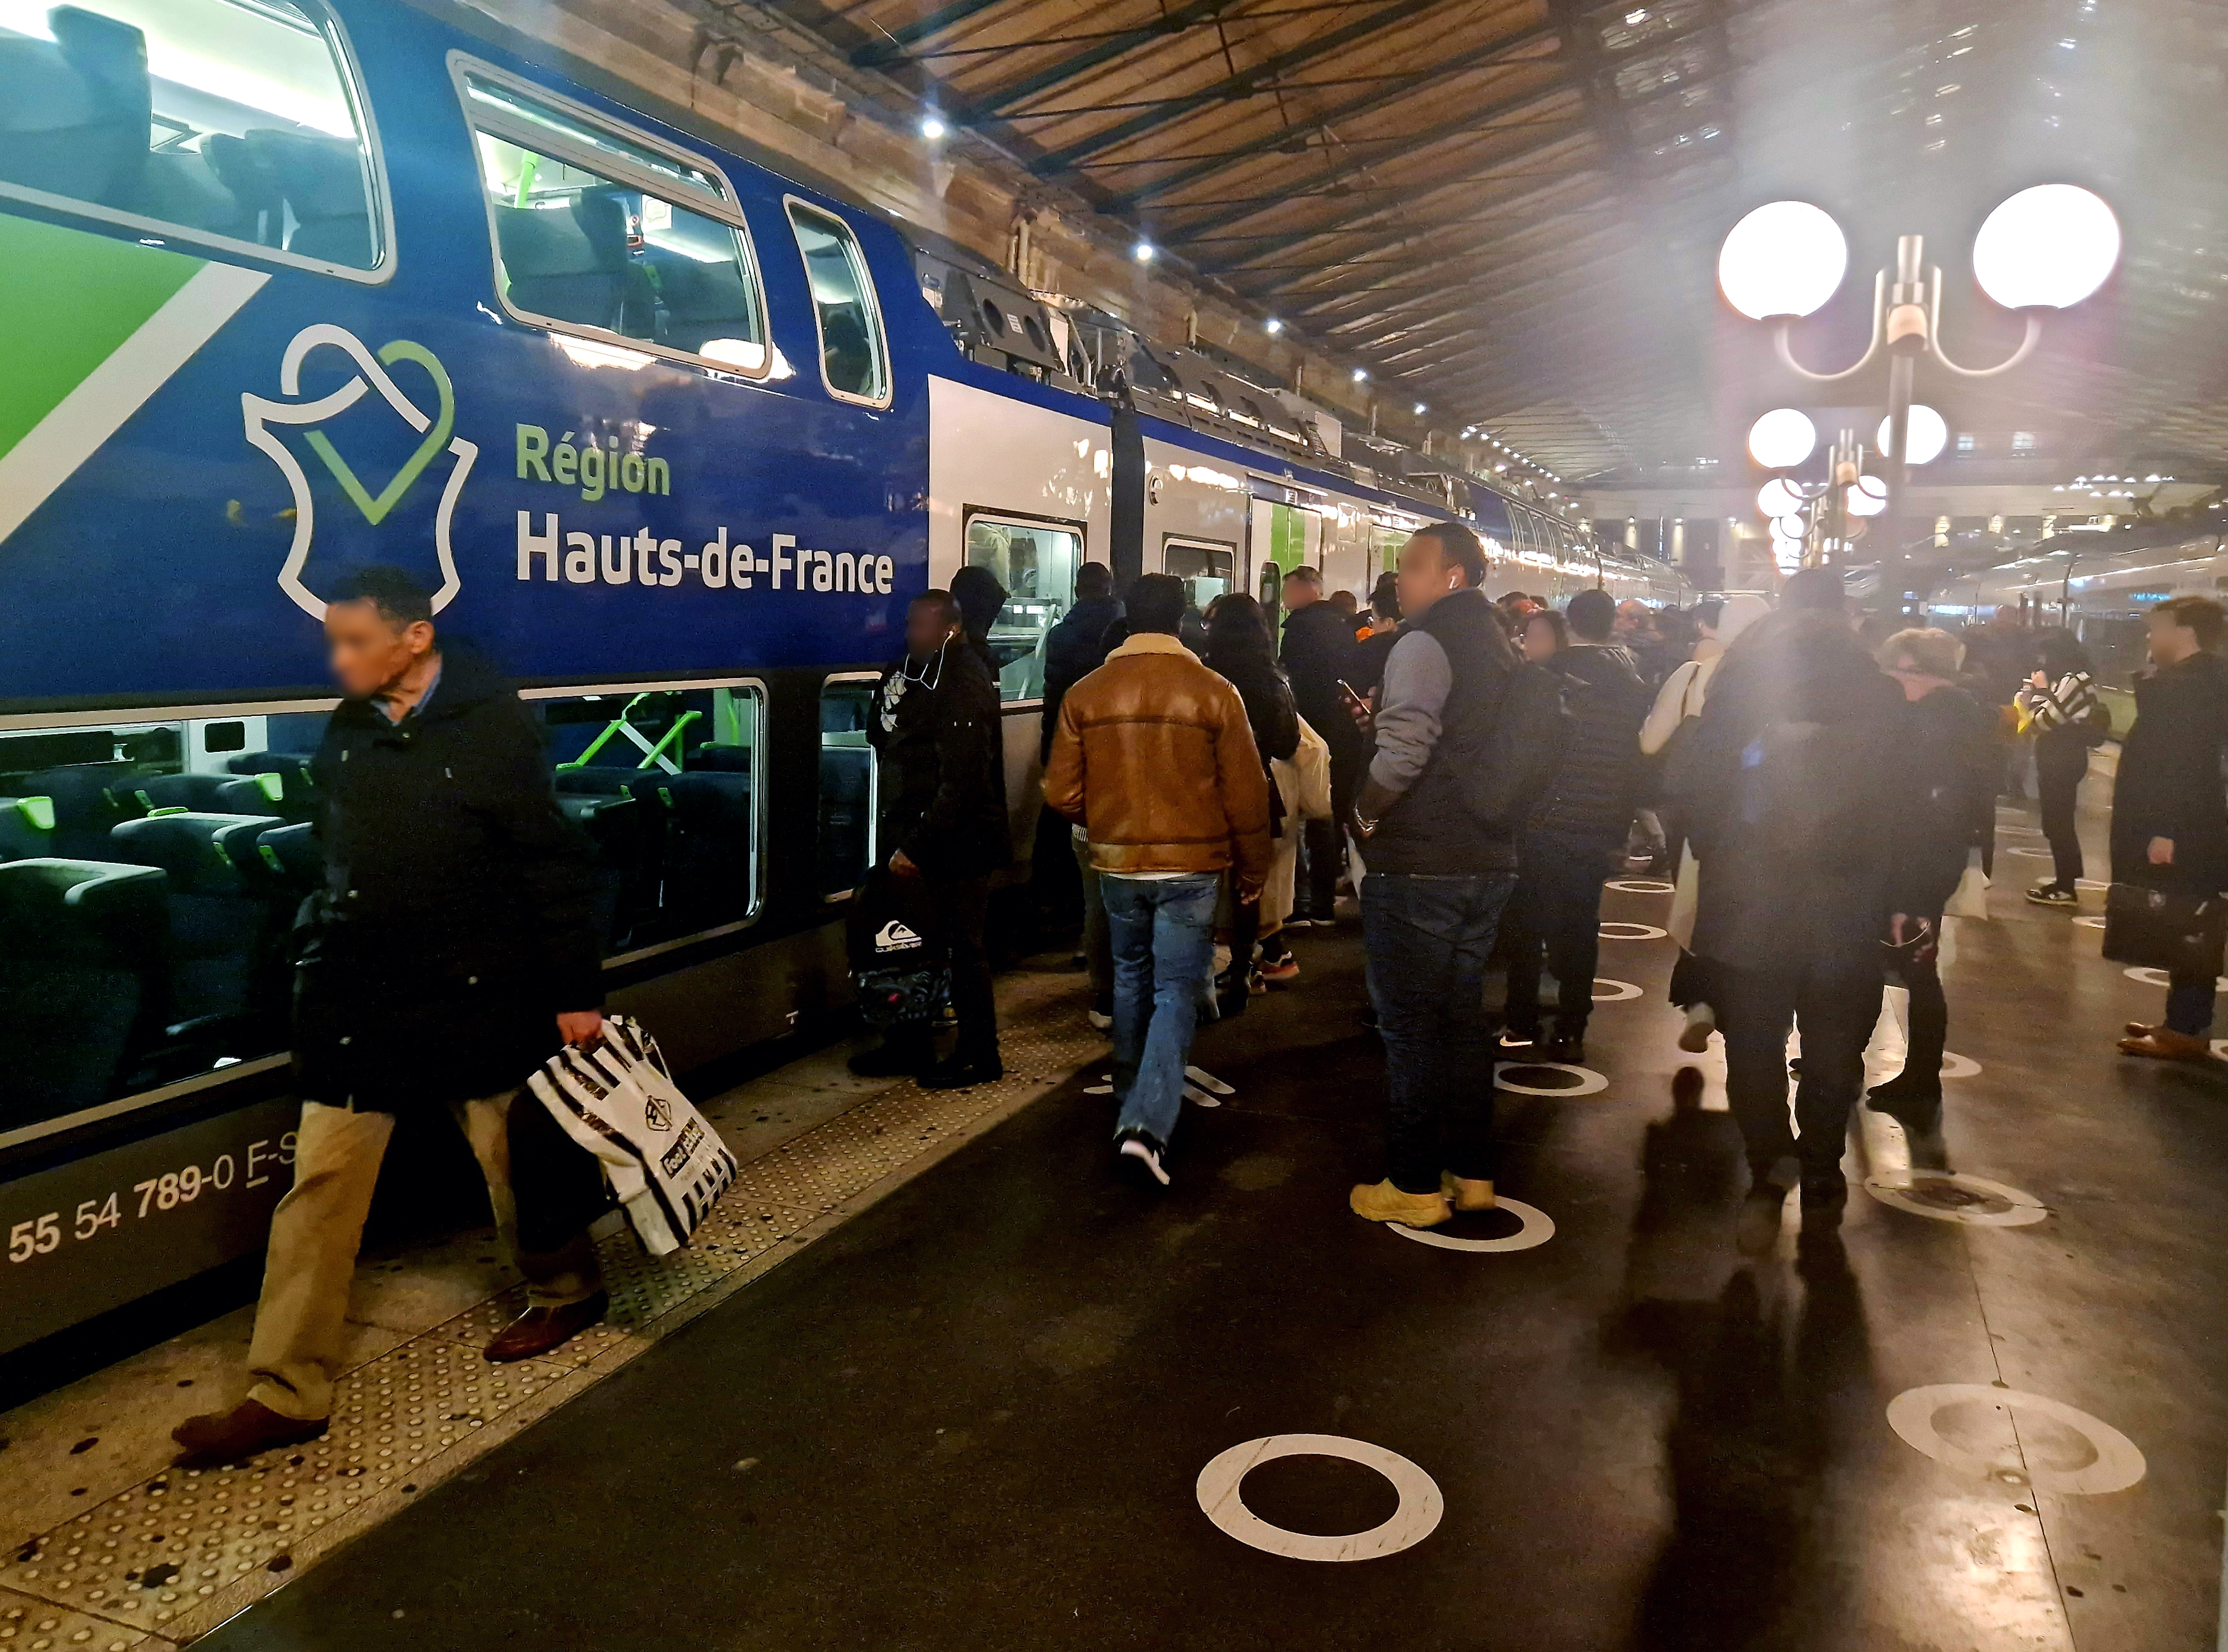 Les usagers du TER reliant les Hauts-de-France à Paris déplorent les retards et incidents sur la ligne qui rendent tous leurs déplacements incertains. LP/Julien Barbare